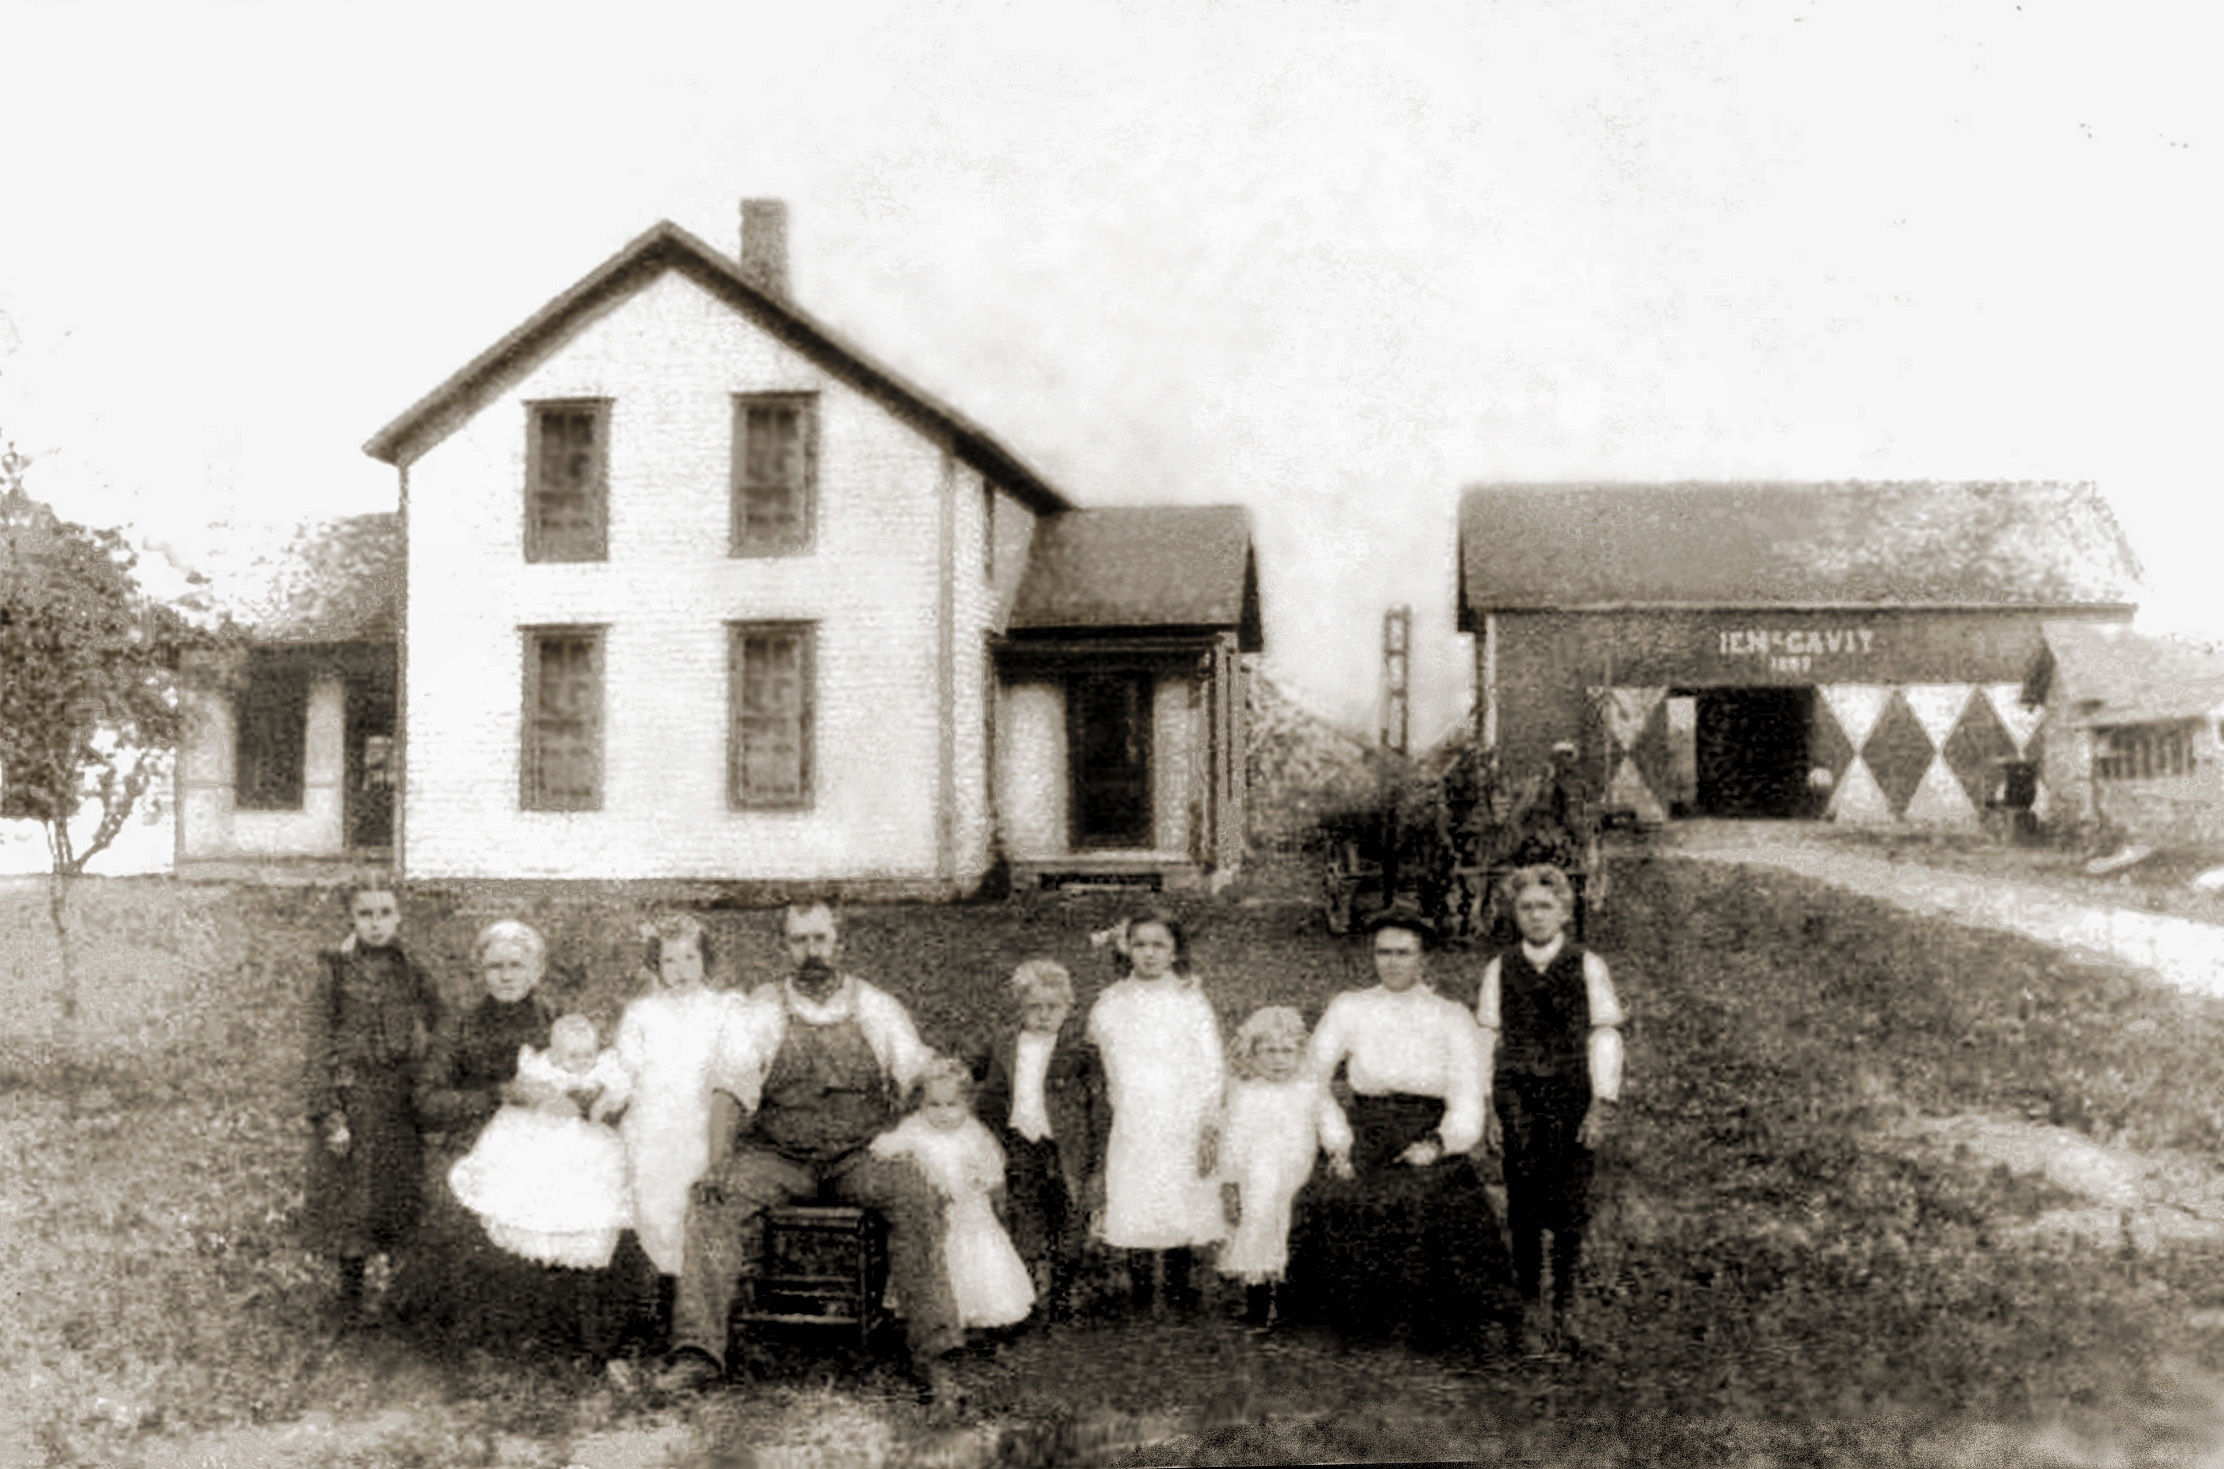 Ira McCavit family home, Ohio